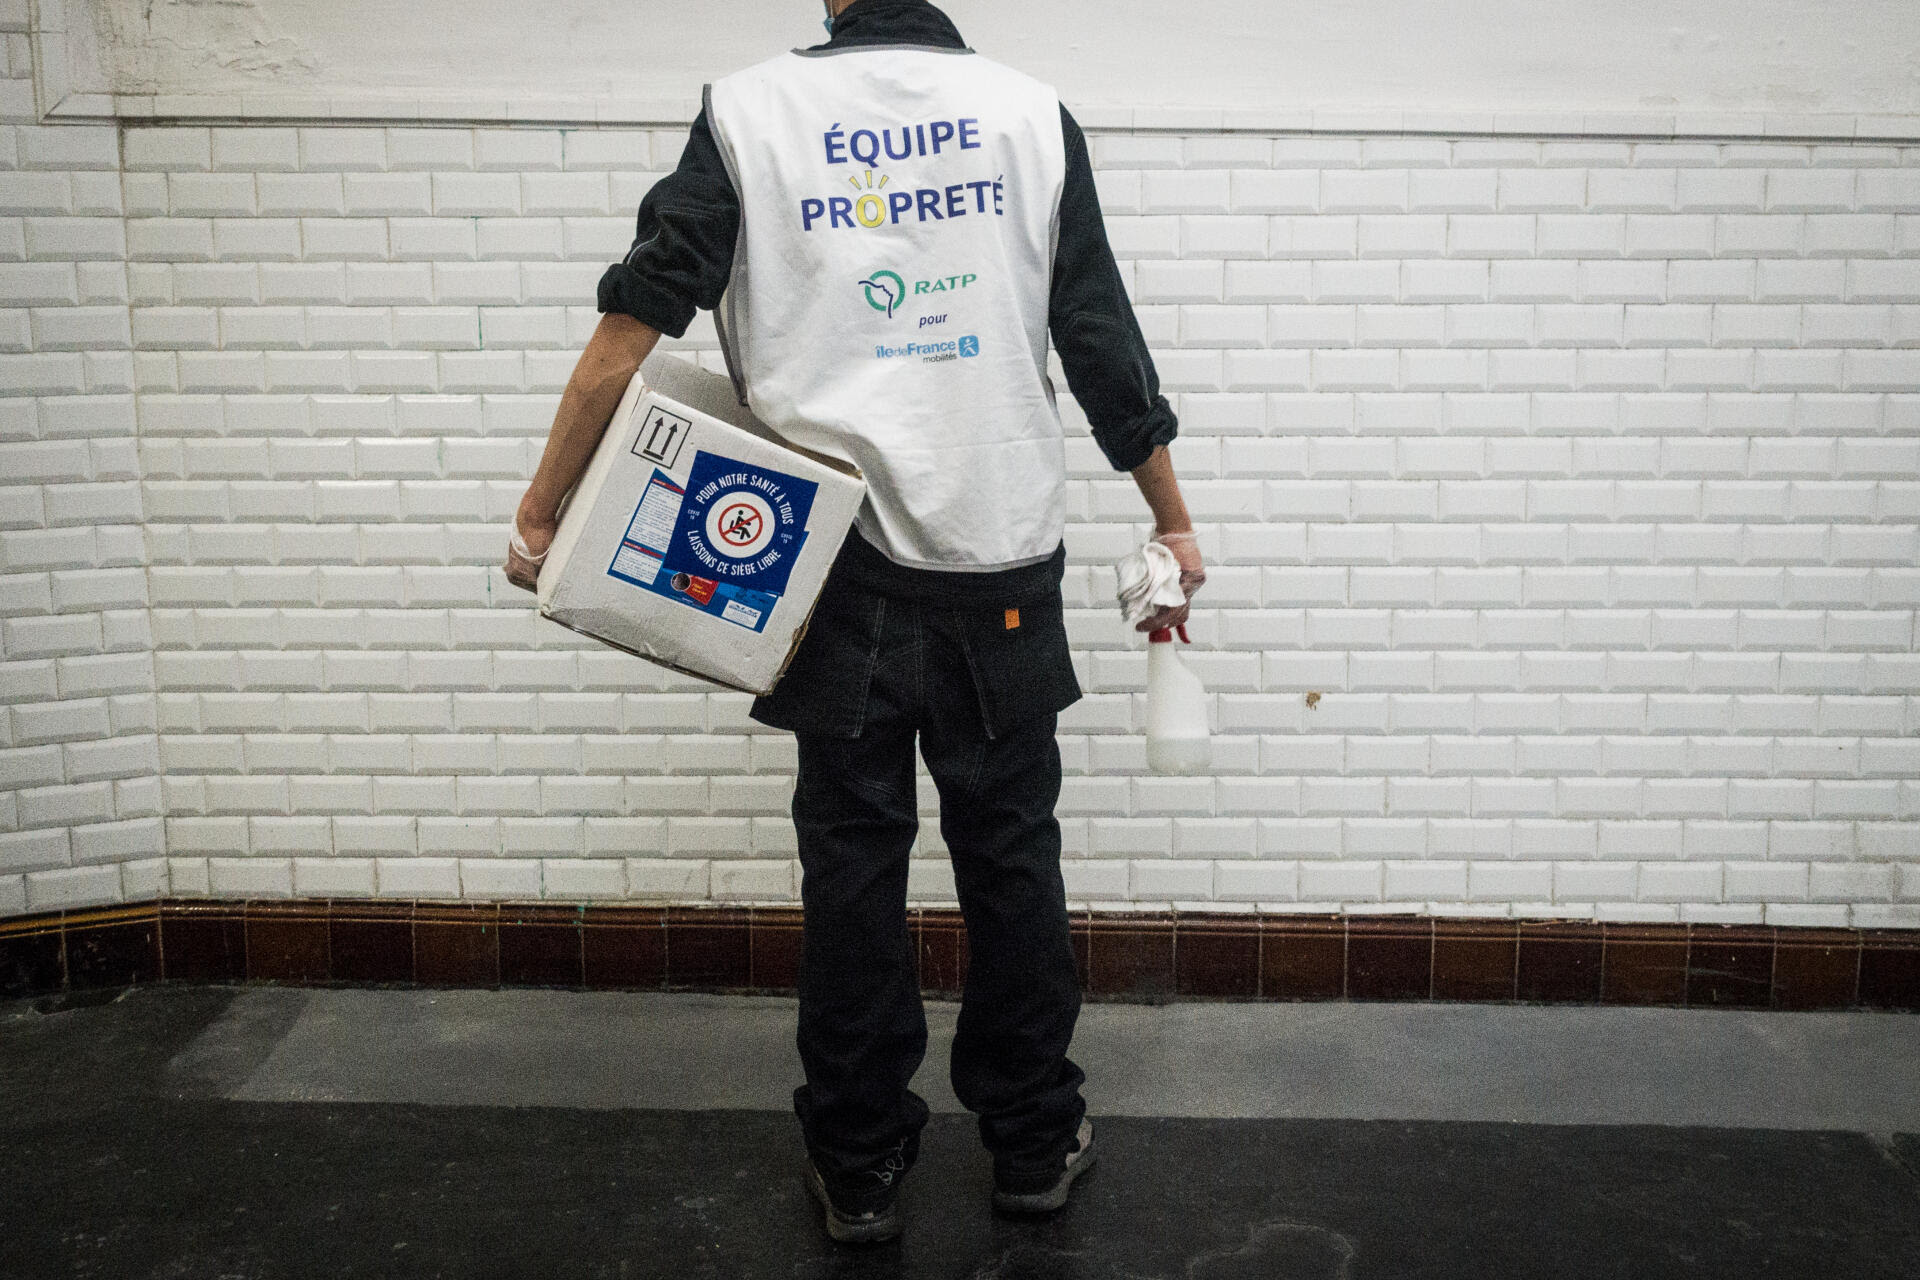 Rahim (prénom modifié), 28 ans, est agent de propreté dans le RER. Avant d'occuper cet emploi, il a été livreur pour les plates-formes Deliveroo, Stuart, UberEats et Globo.